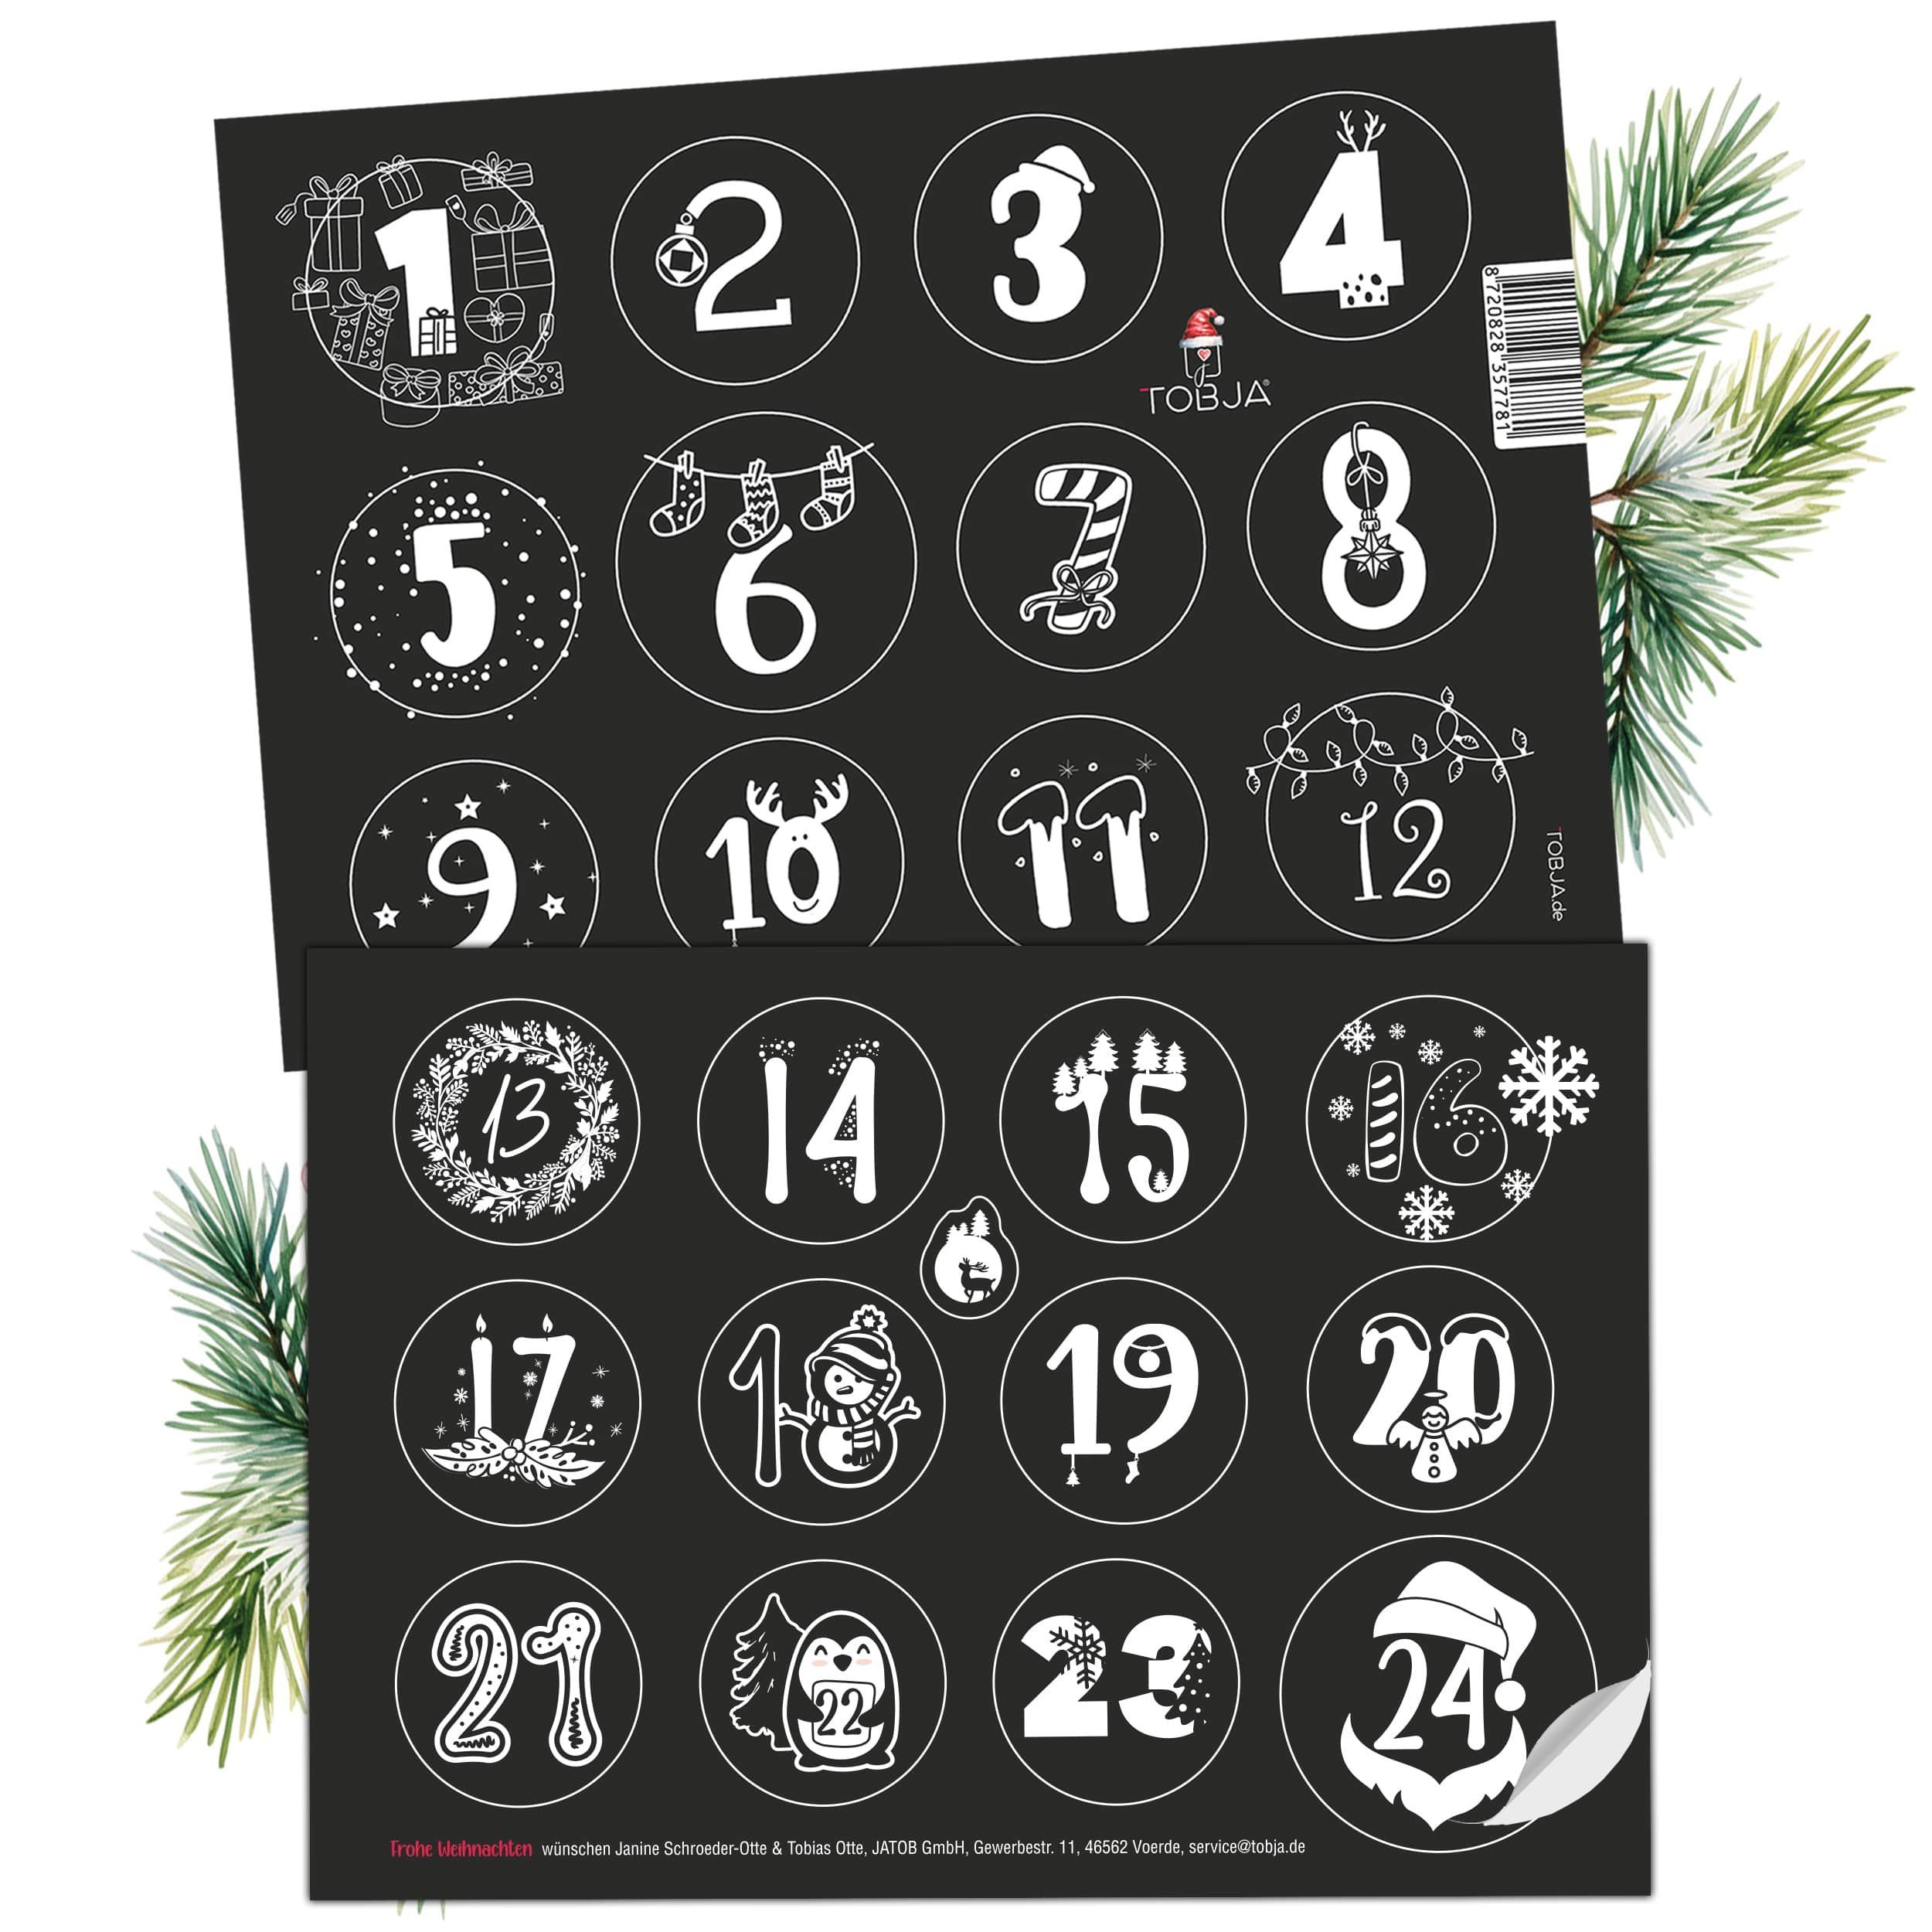 TOBJA Zahlenaufkleber 1-24, Adventskalender Schwarz-Weiß Advent Weihnachtsaufkleber Aufkleber Nummern Adventsaufkleber Weihnachten. Sticker Advent